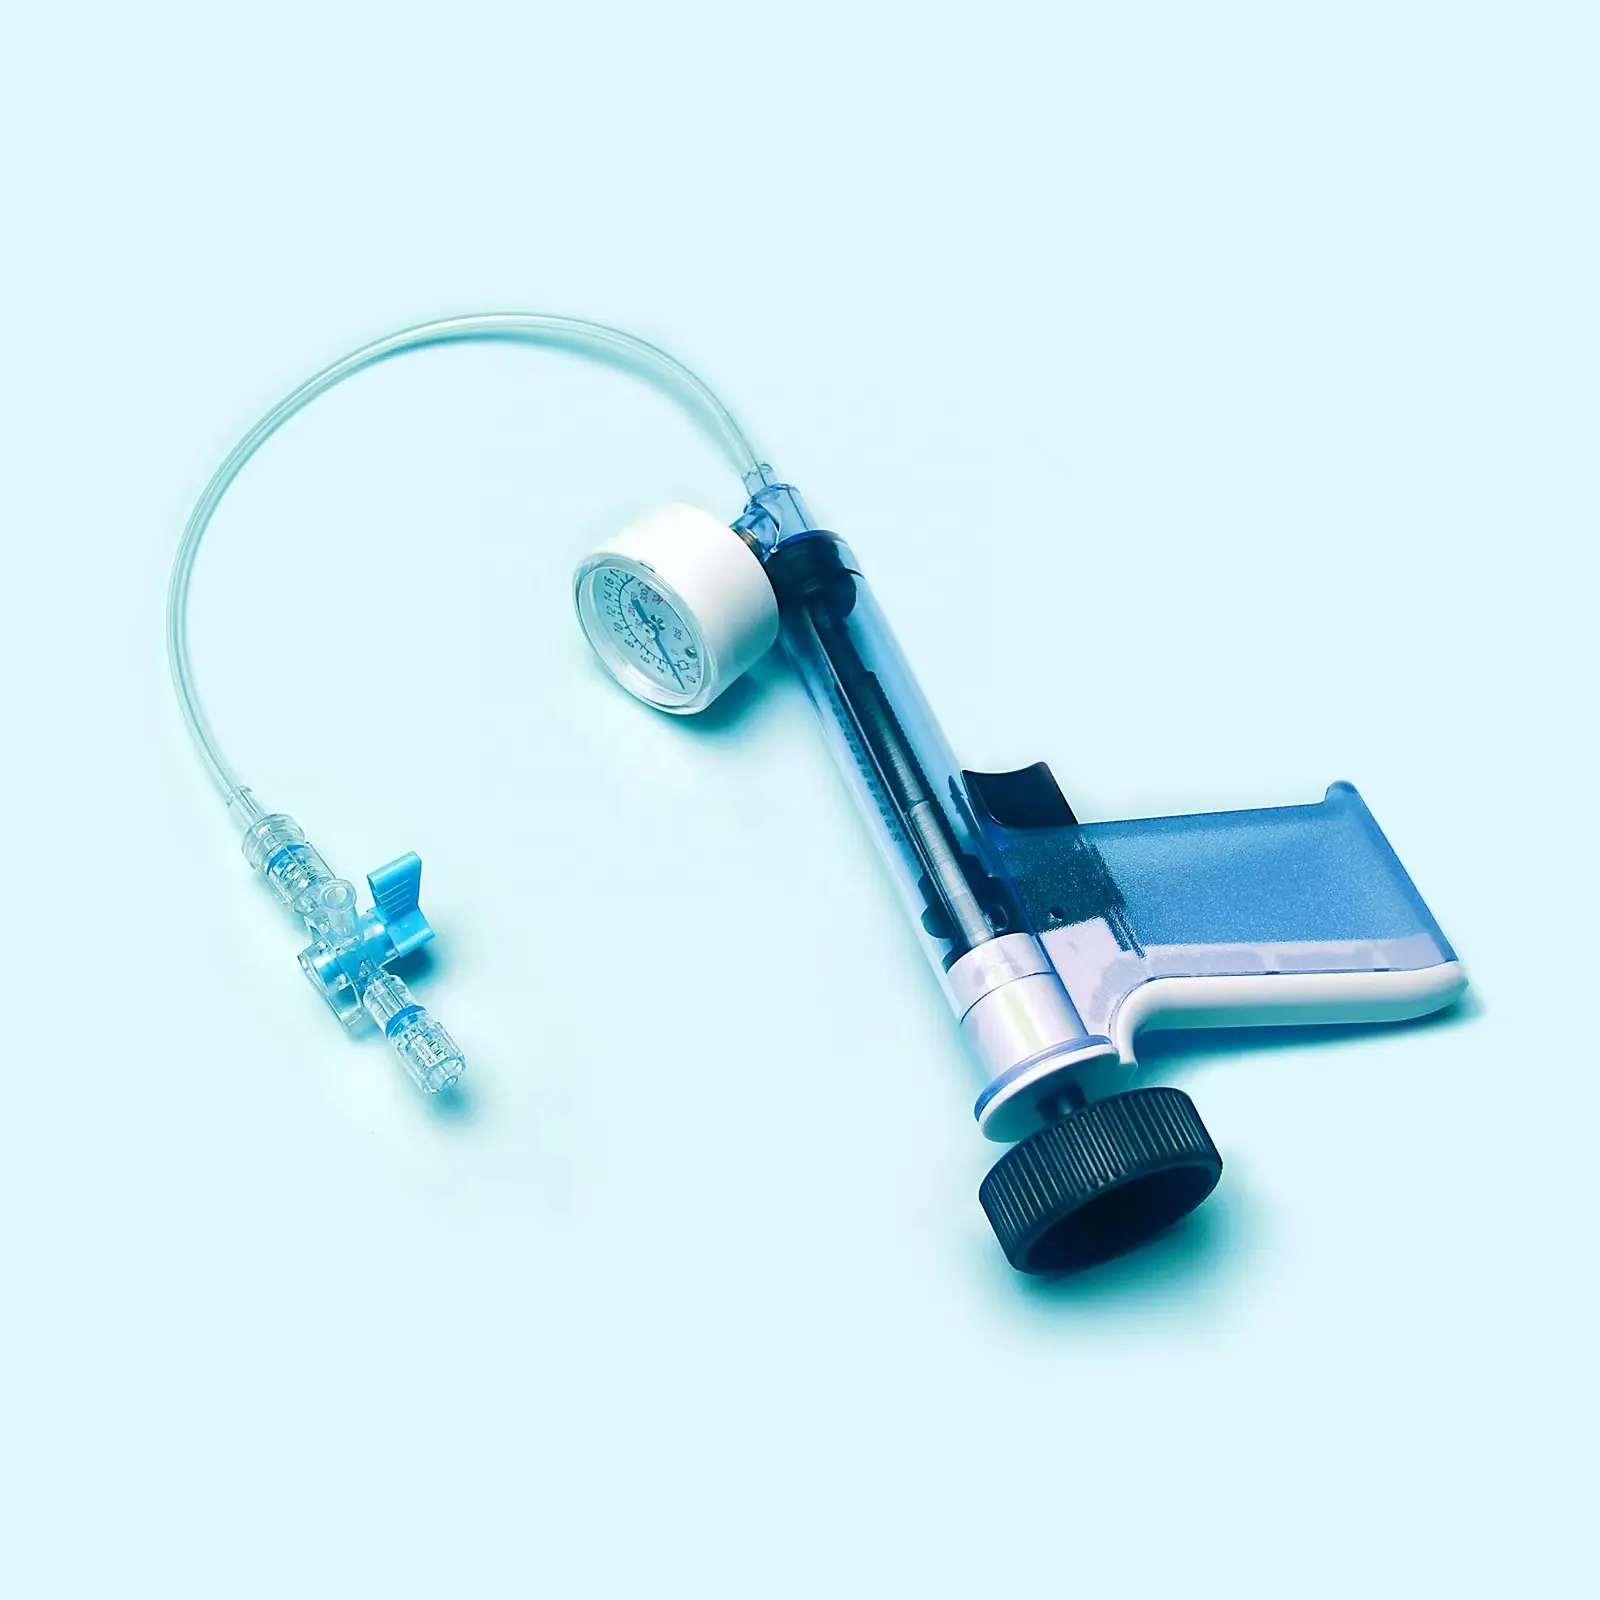 Tianck Medical manuale pompa dilatatore a palloncino pompa angiografia dispositivo di gonfiaggio a palloncino arterioso